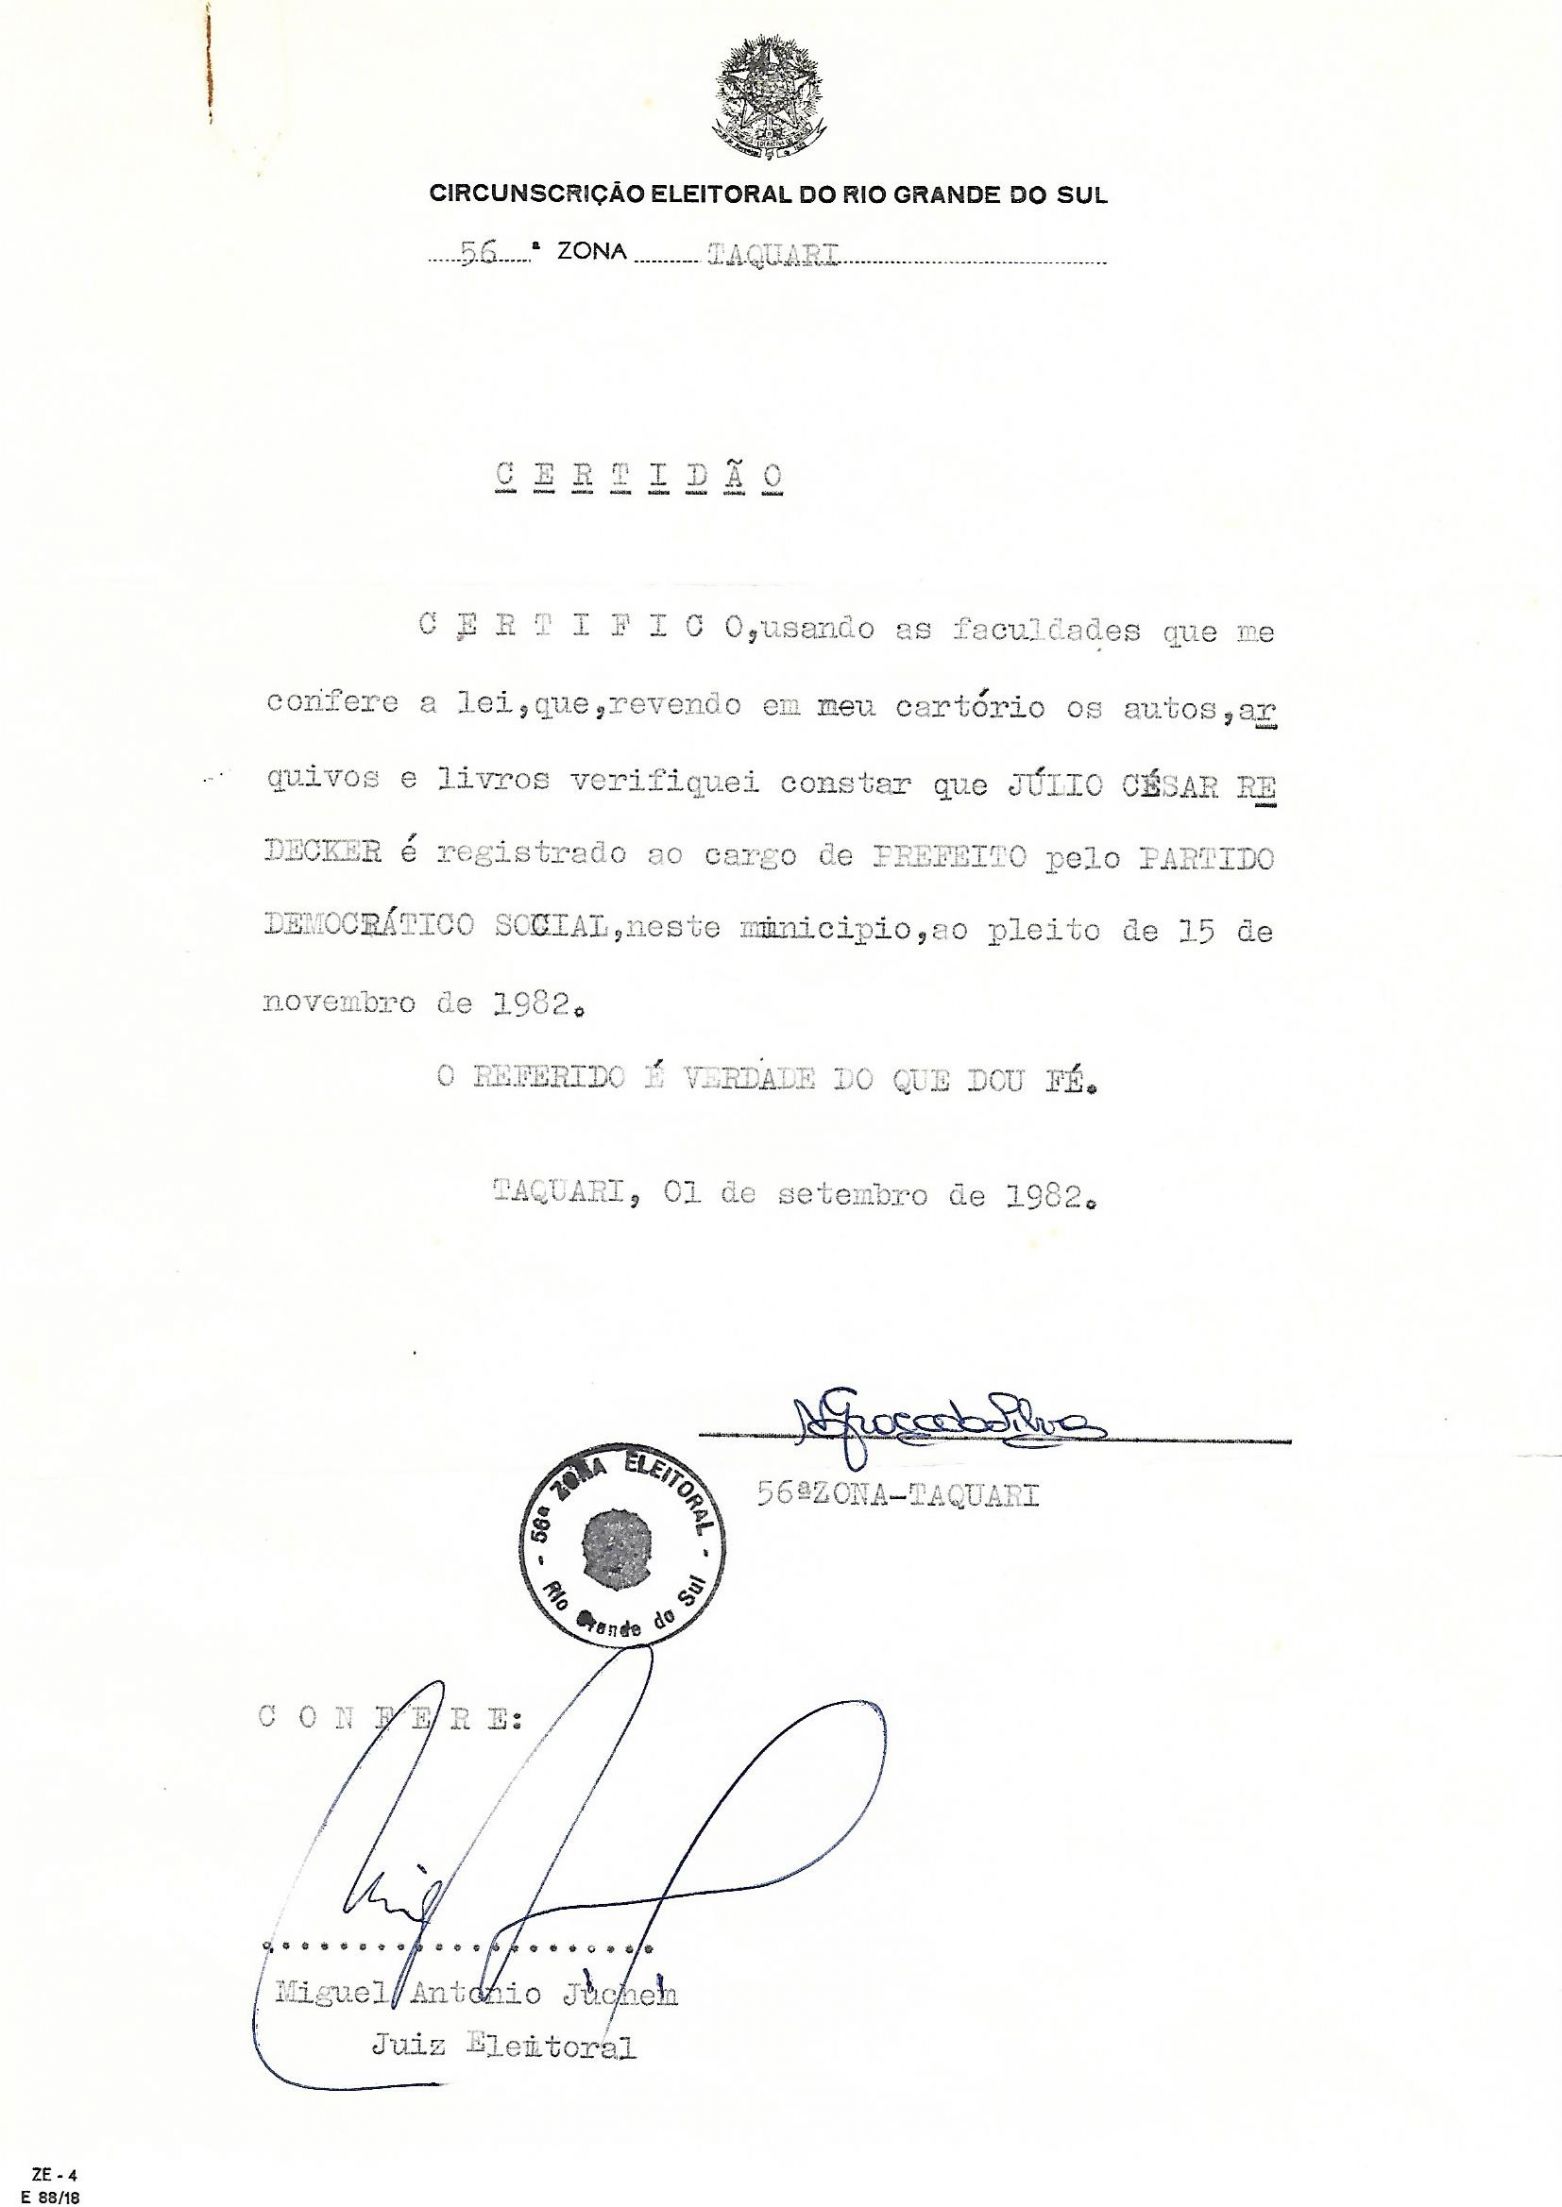 5bb65f0c525e7-certidao-de-registro-de-candidatura-a-prefeito-em-taquari-1982.jpg